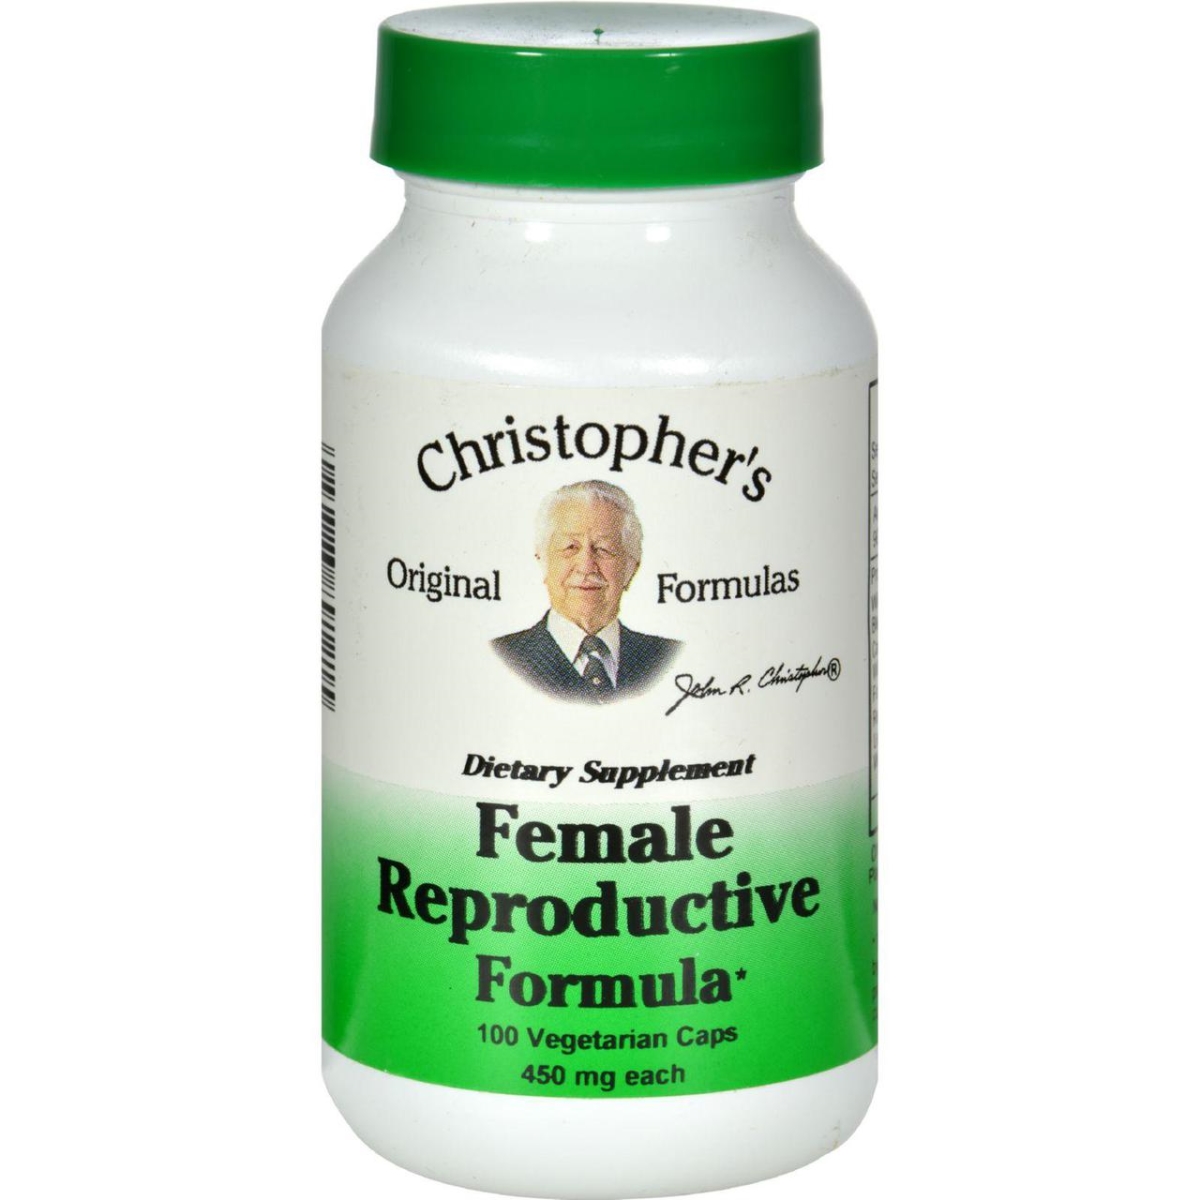 Hg0411892 460 Mg Female Reproductive Formula, 100 Vegetarian Capsules